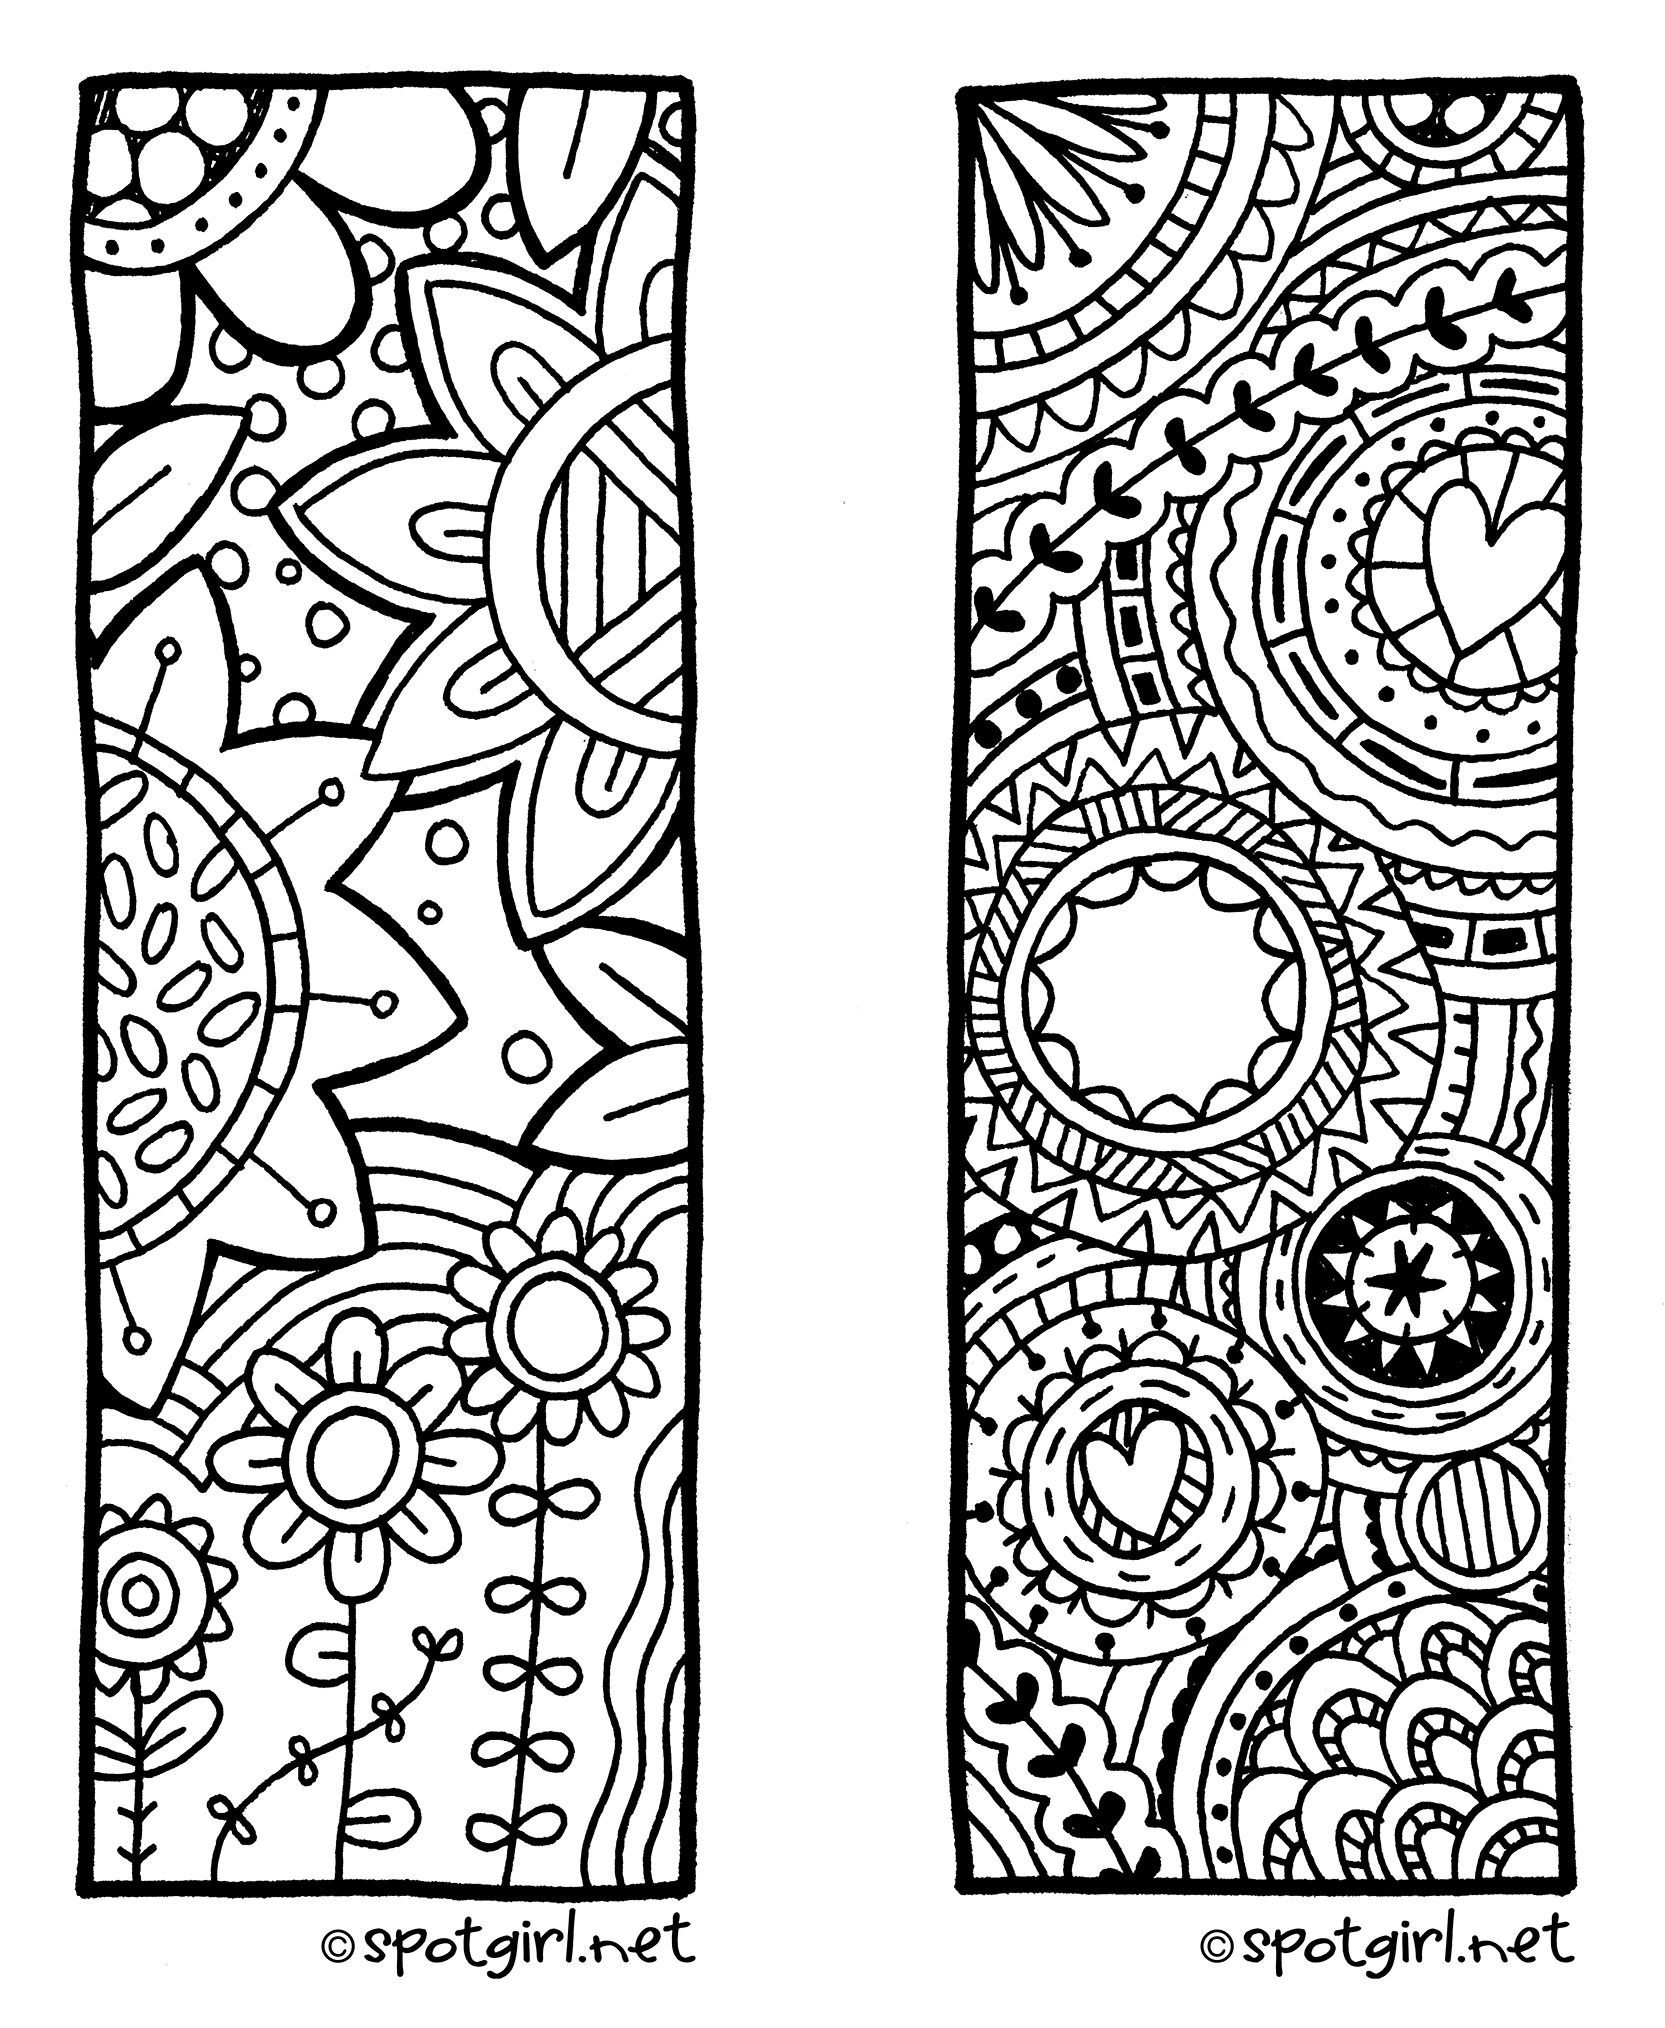 HC BookmarkSet LR jpg 1 665 2 028 Pixels Coloring Bookmarks 